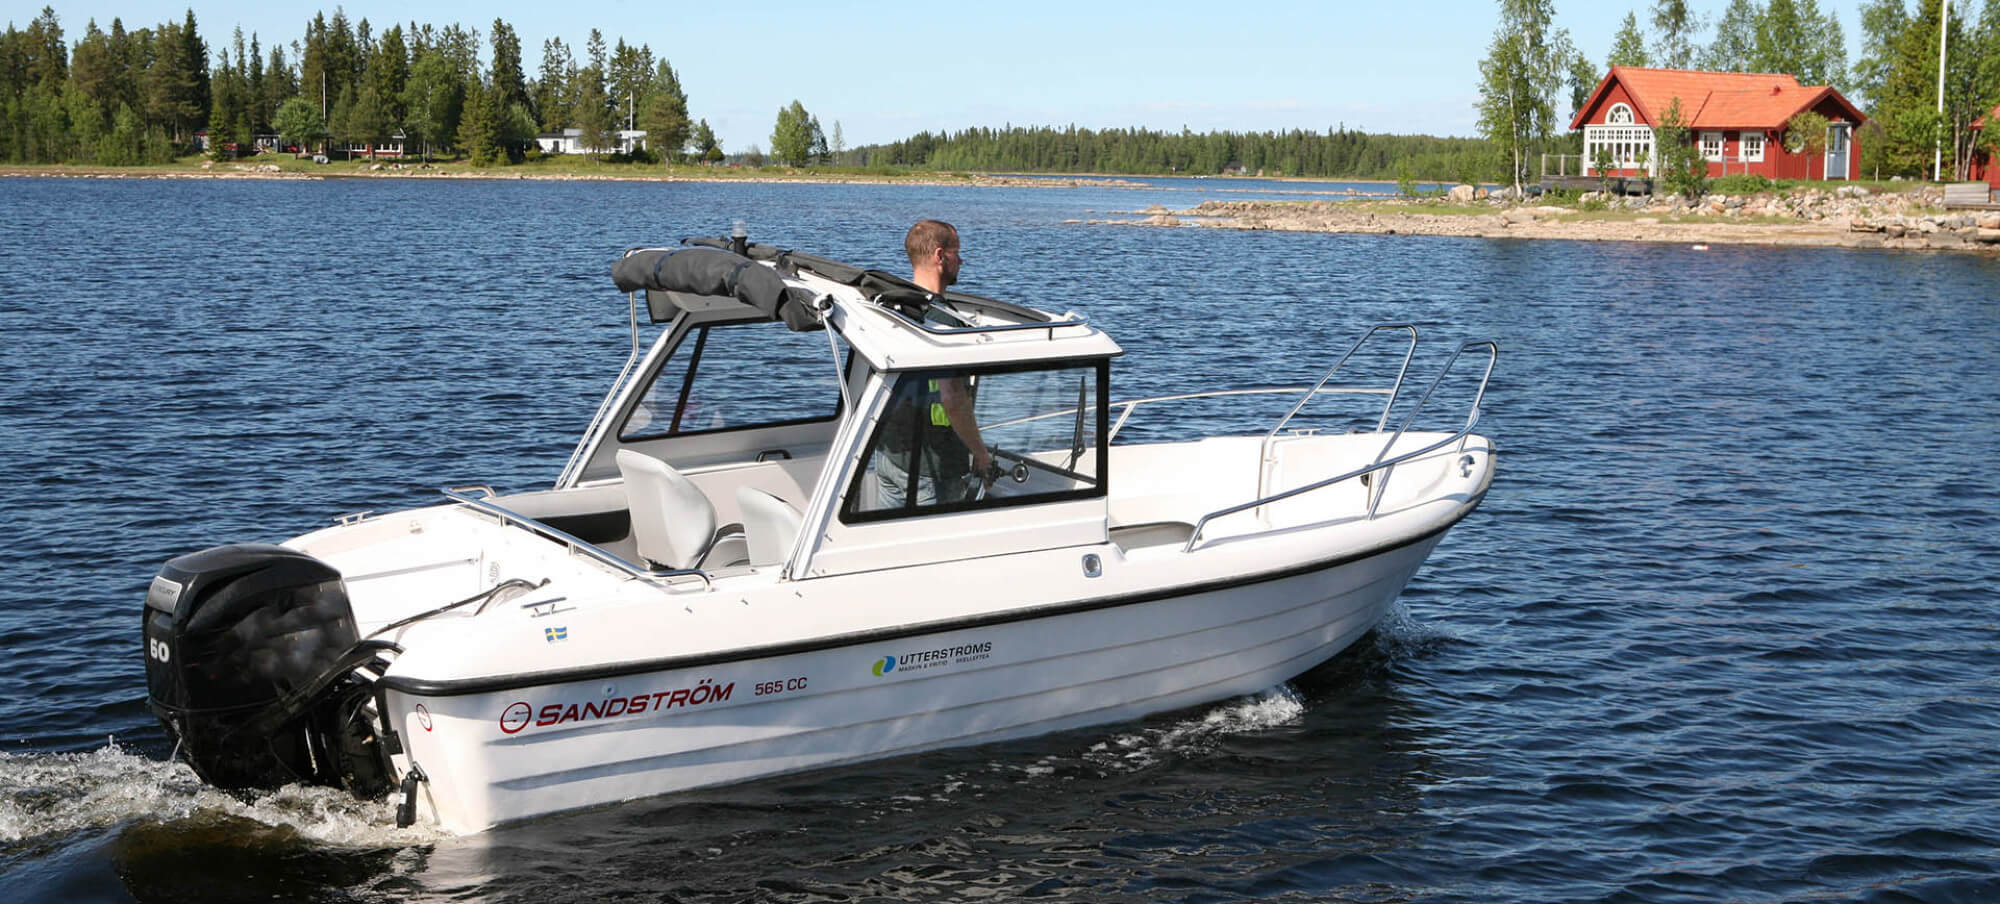 Hitta rätt båt och båttrailer hos VK Marincenter i Borås.